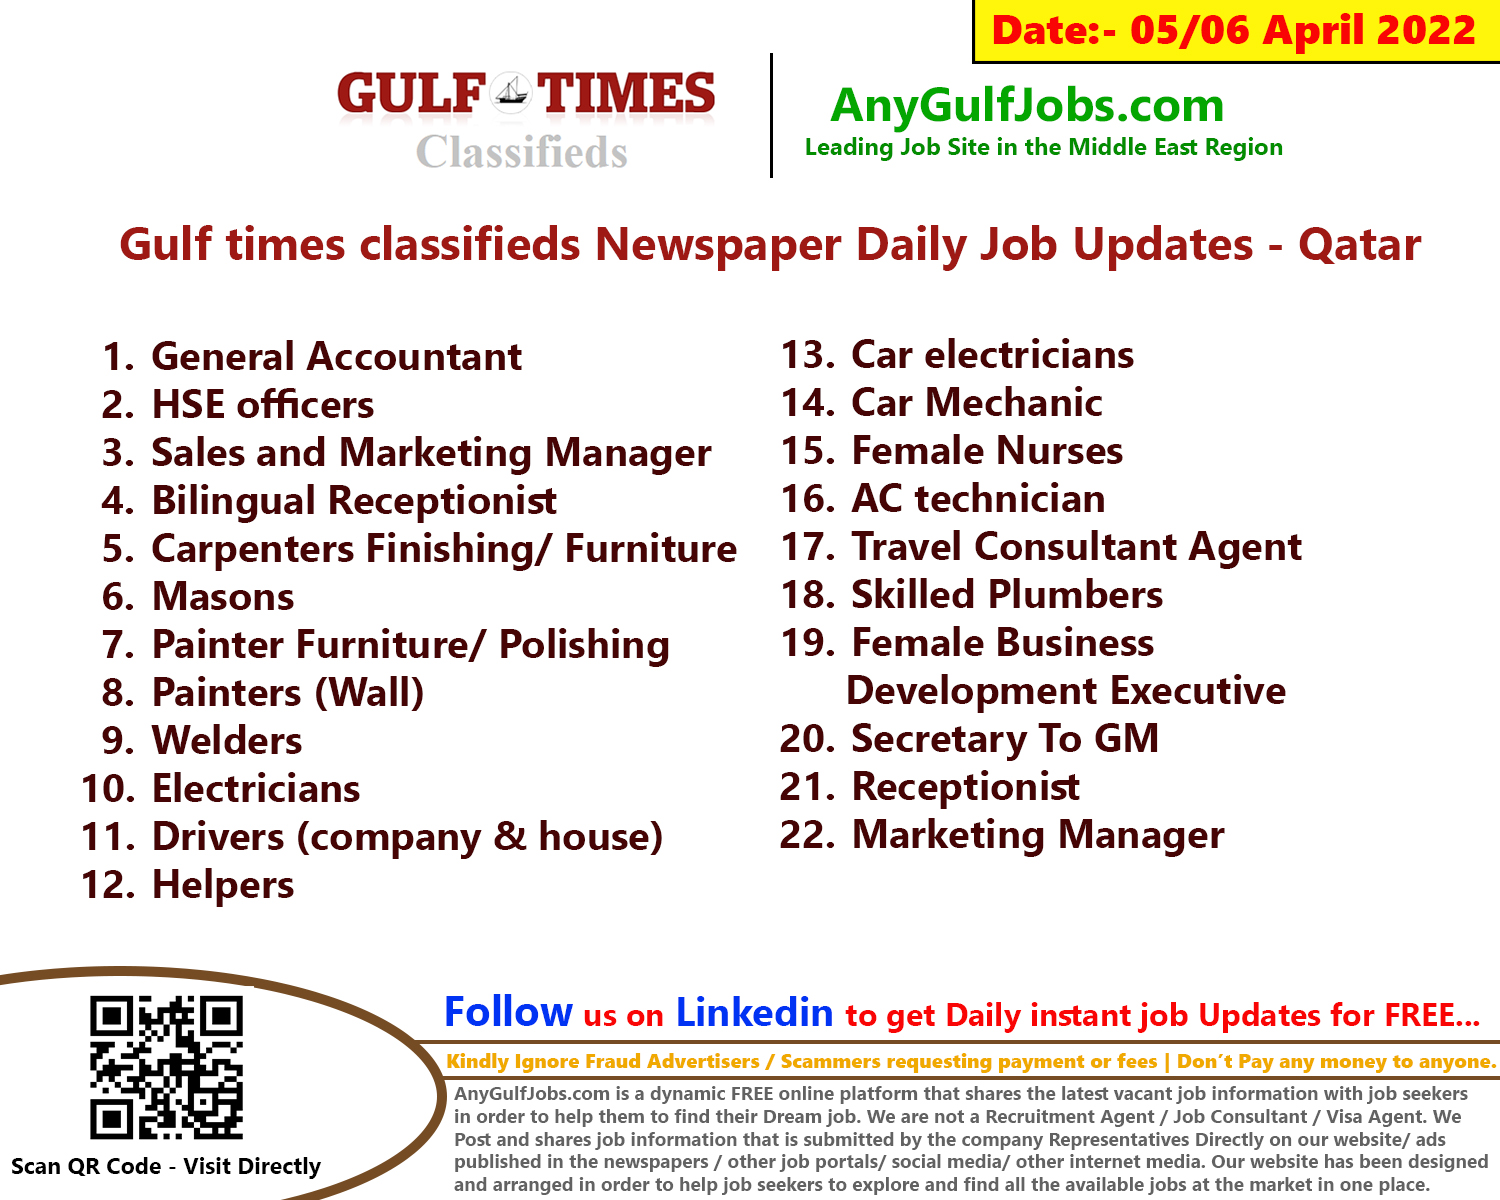 Gulf times classifieds Job Vacancies Qatar - 05/06 April 2022